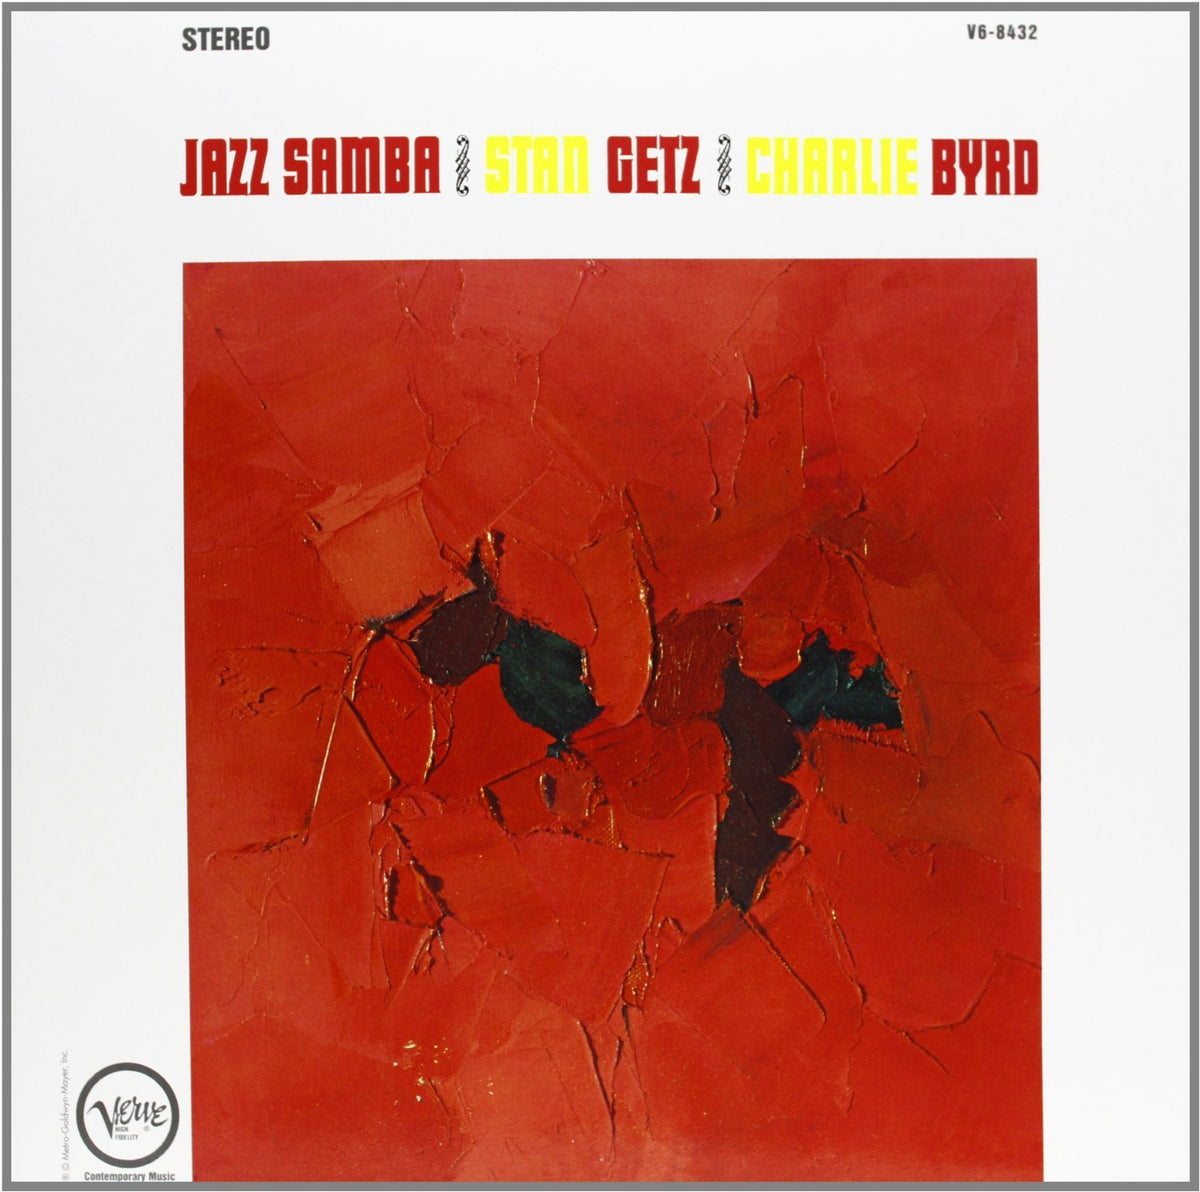 Stan Getz and Charlie Bird's "Jazz Samba"